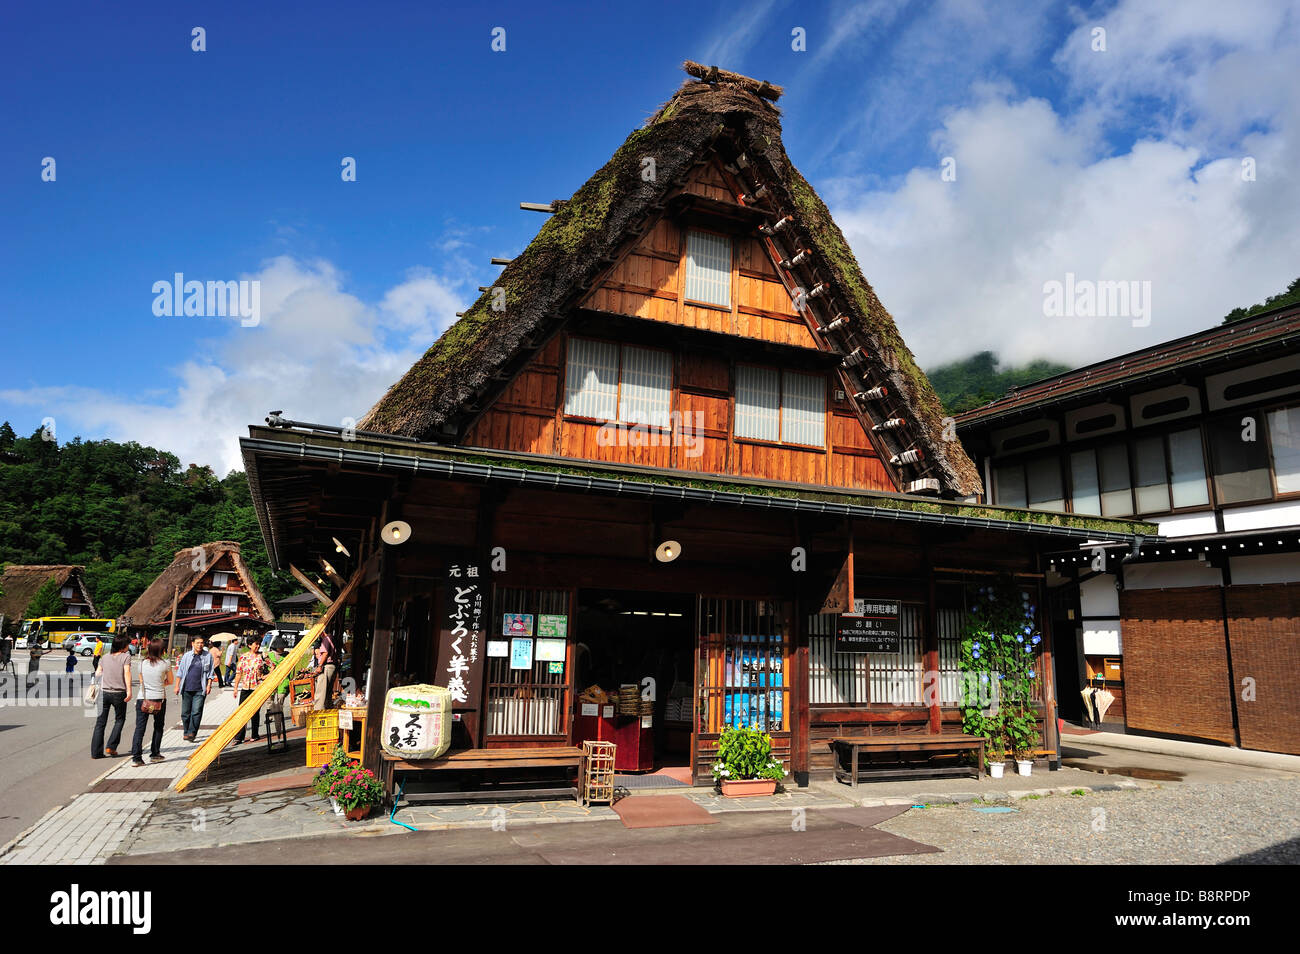 Sovuenirs Shop, Shirakawa-go, préfecture de Gifu, Japon Banque D'Images